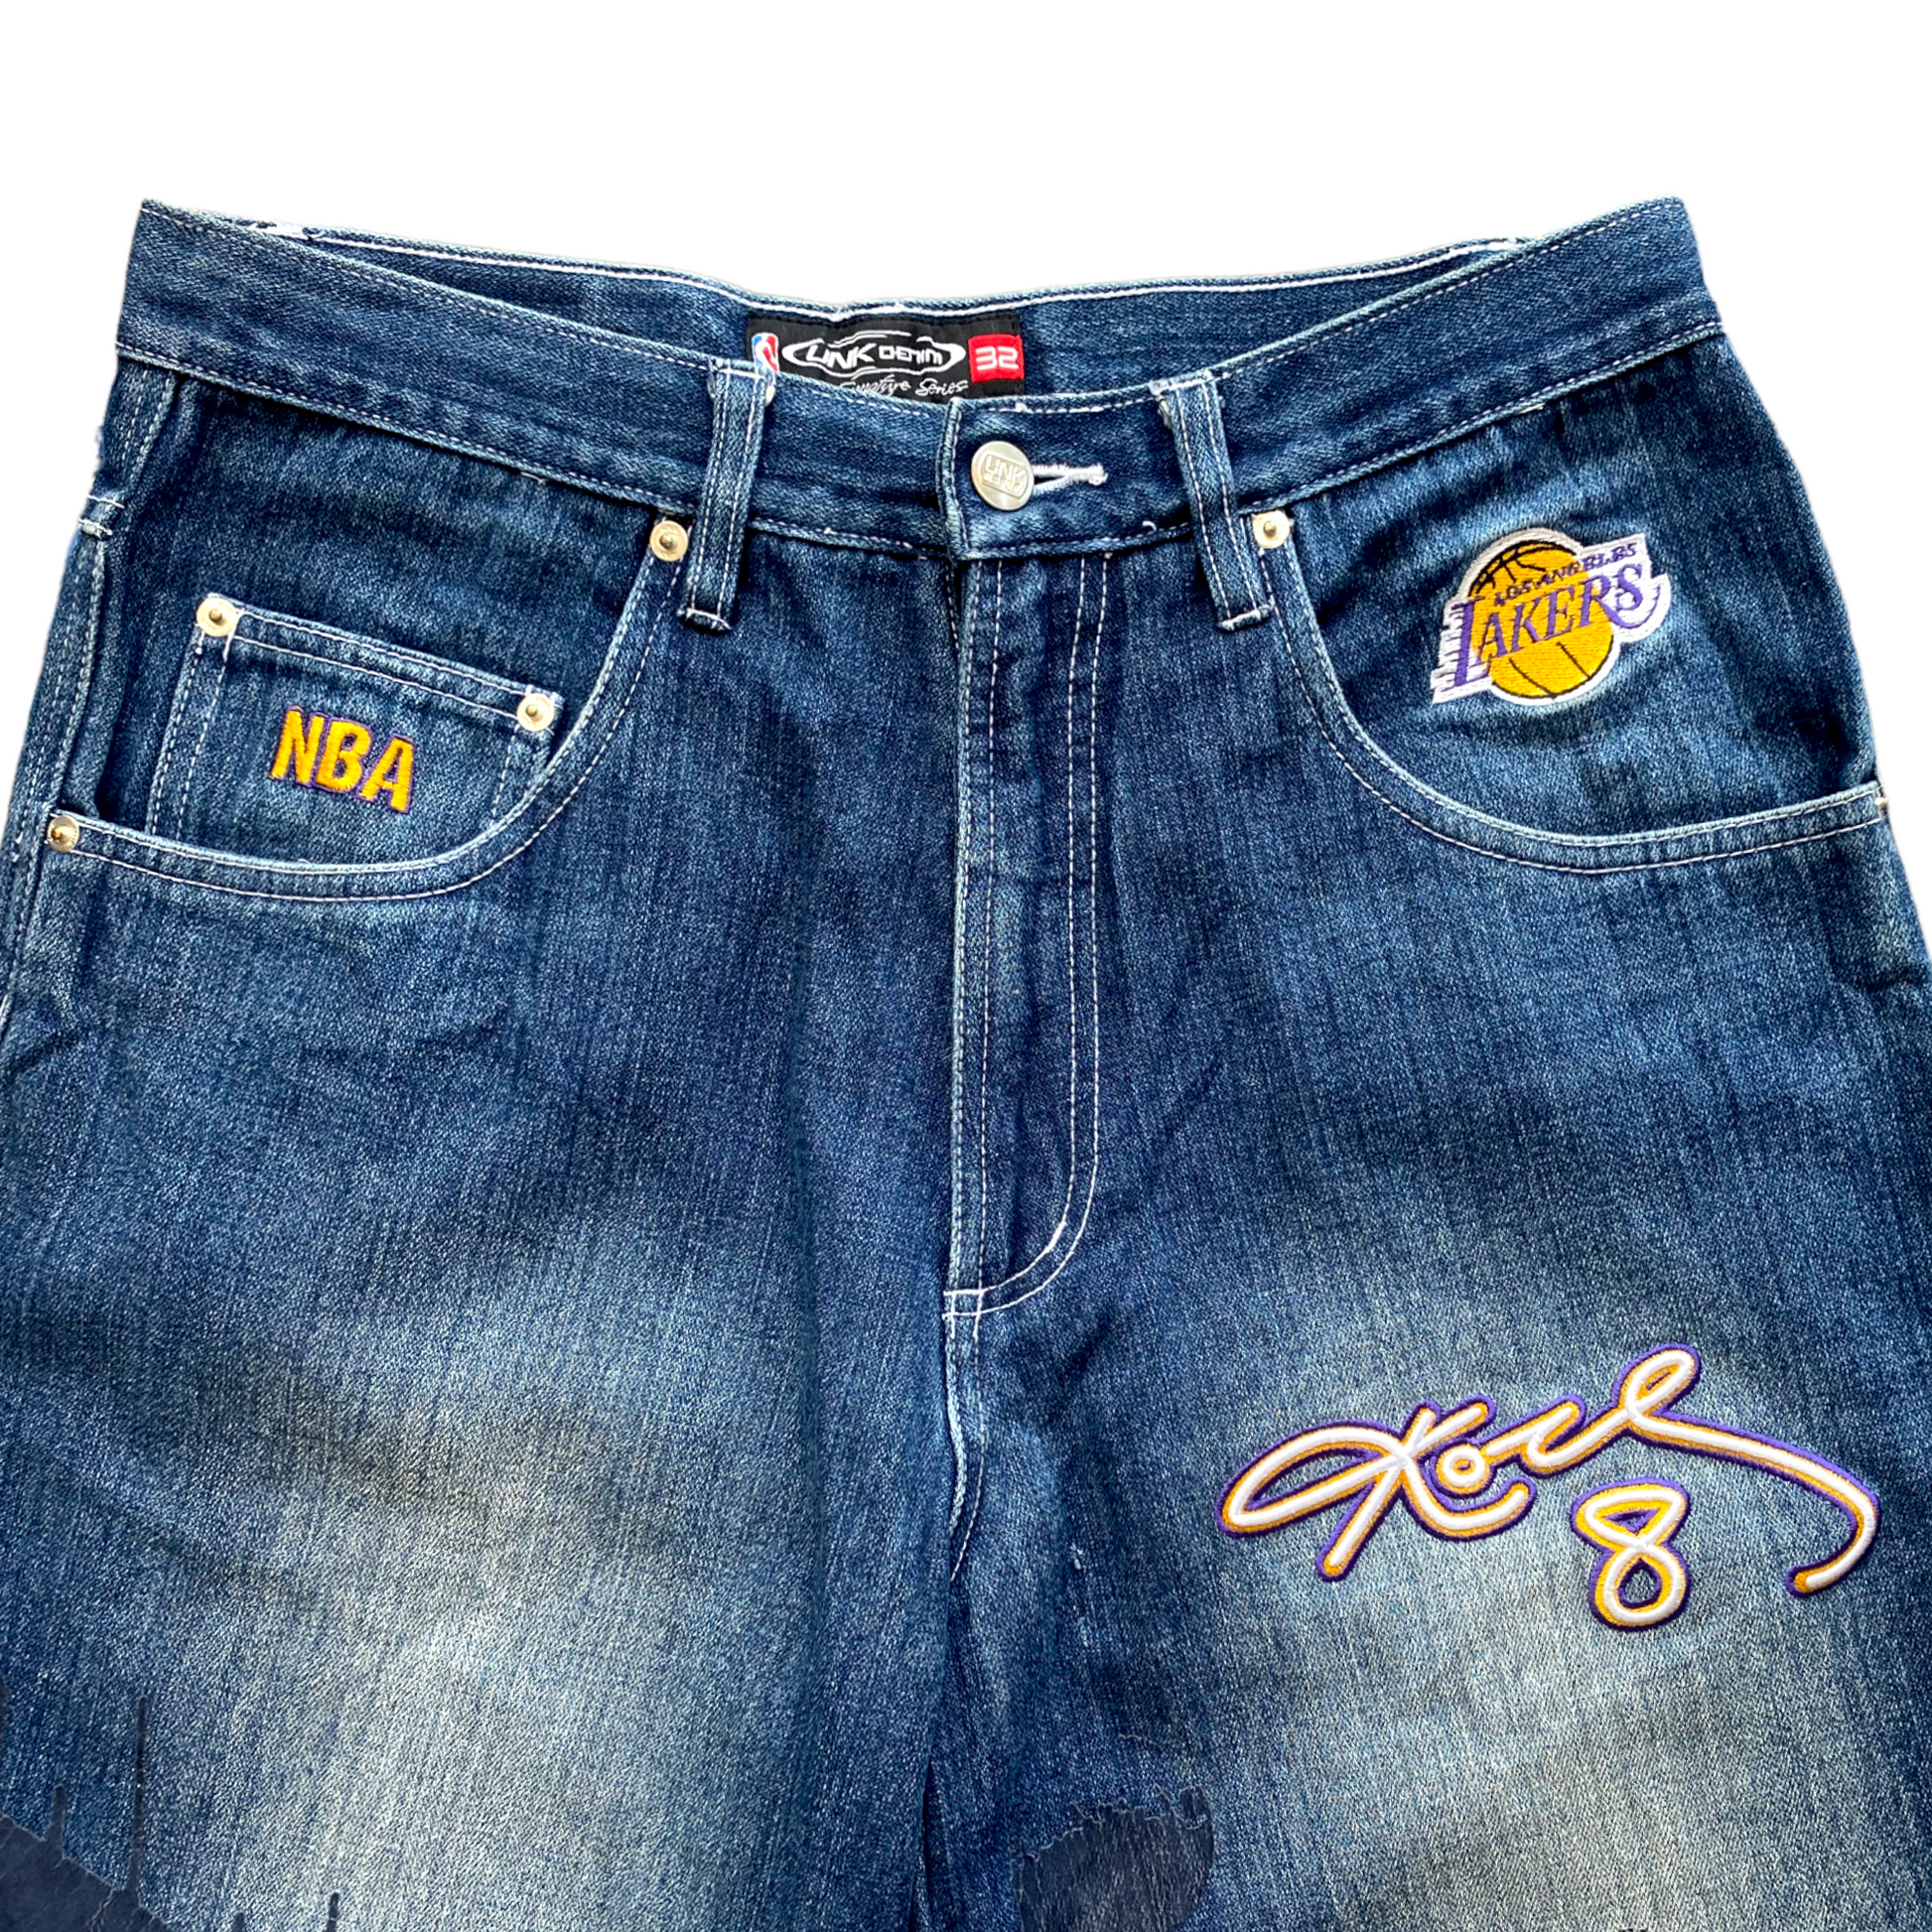 Vintage Rare UNK NBA Jeans